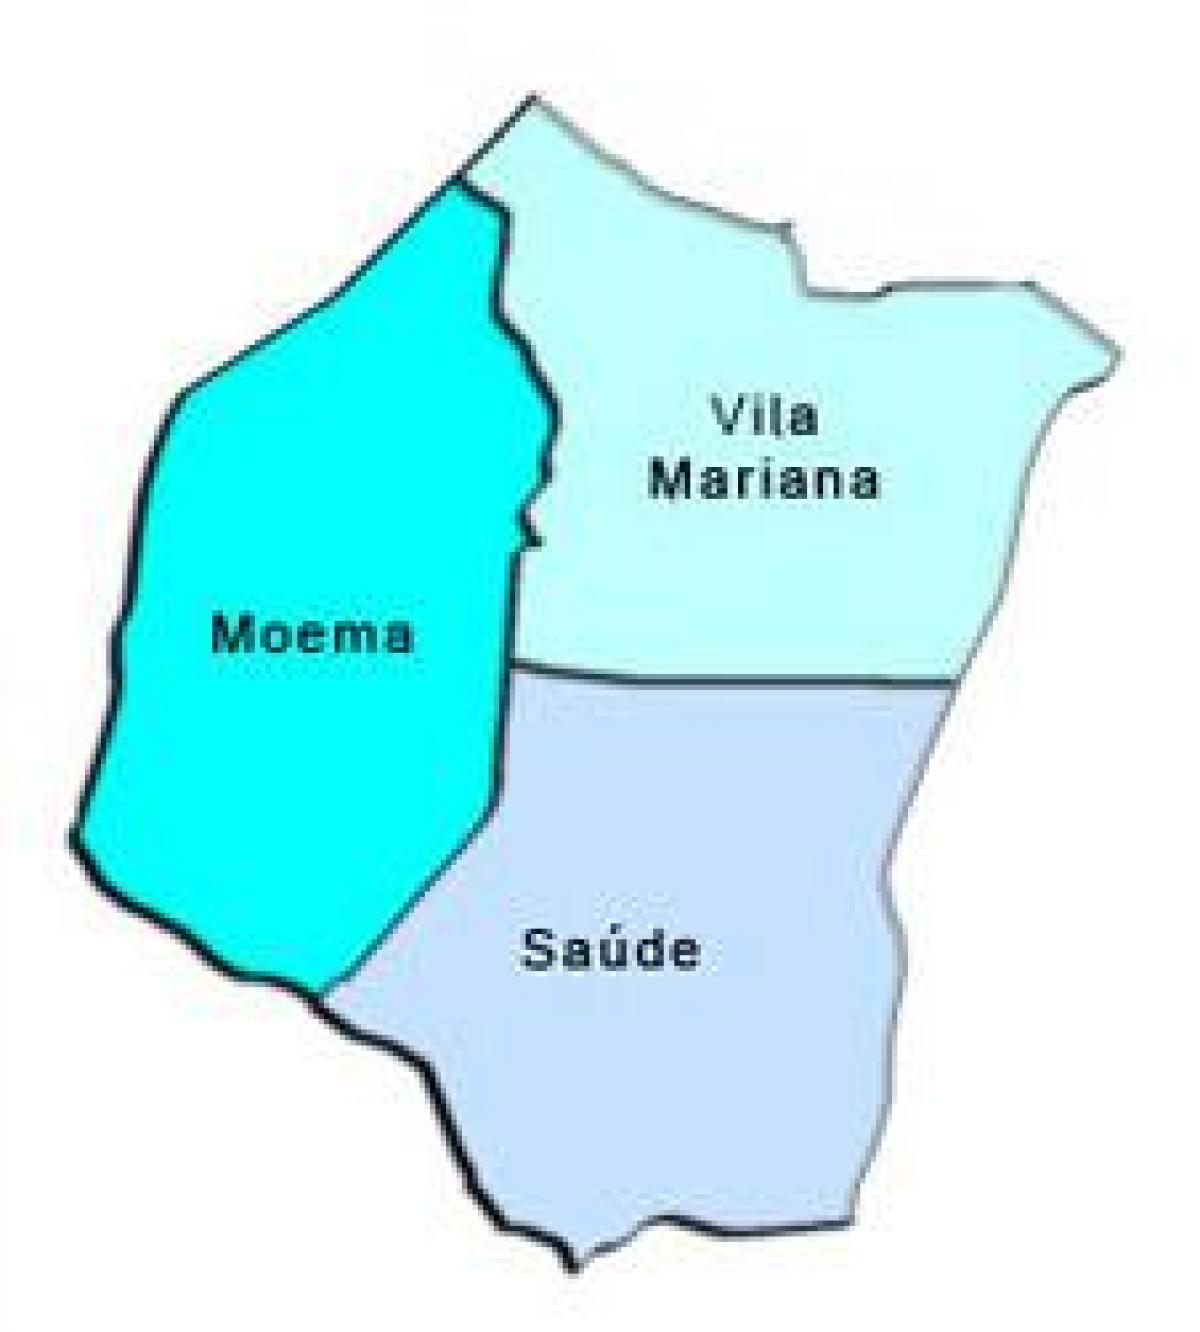 Bản đồ của Vila Mariana phụ tỉnh